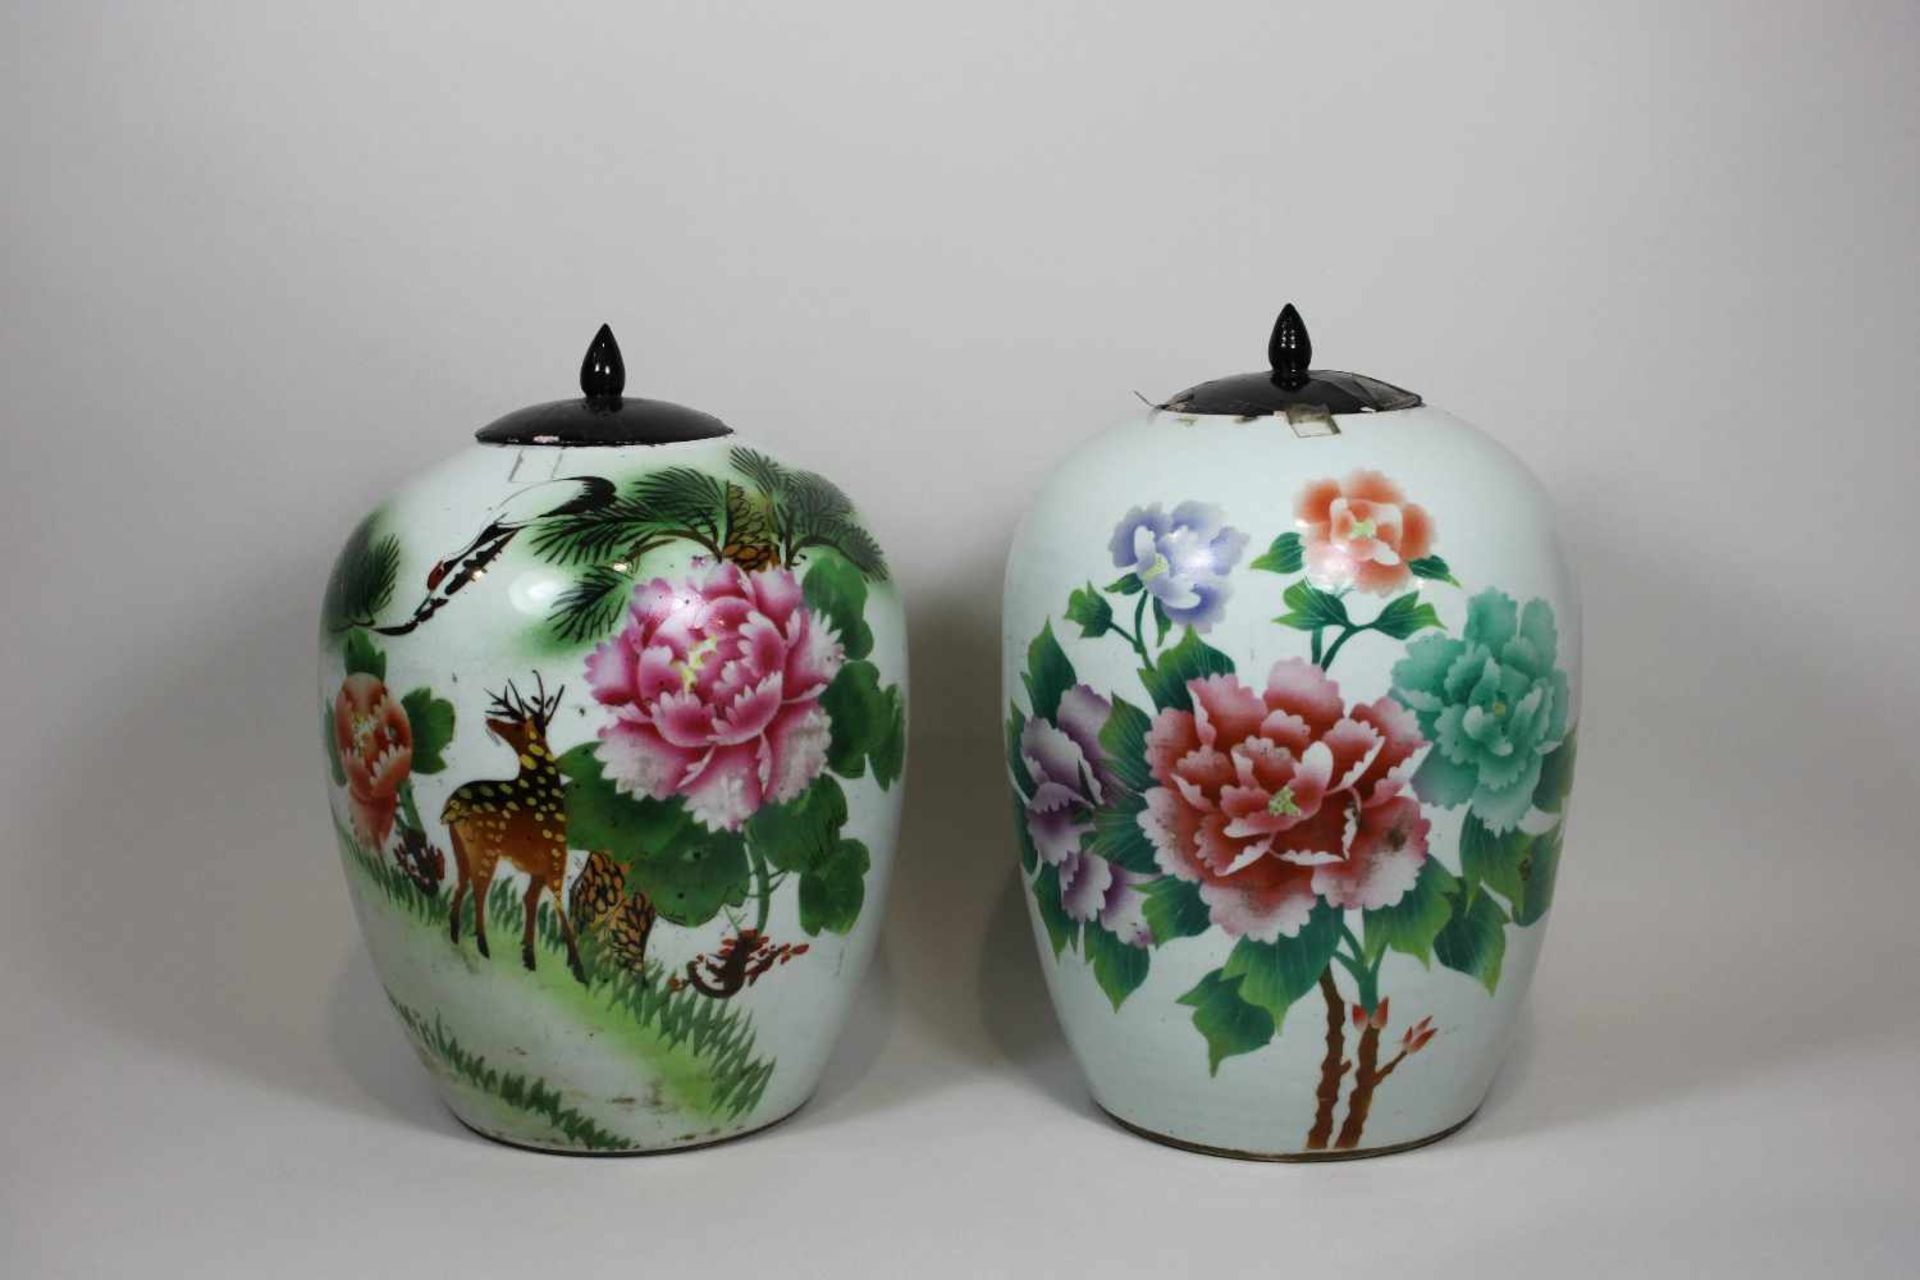 Paar Deckelvasen, China, Porzellan, polychrome Bemalung in den Farben der Familie Rose. Eine Vase